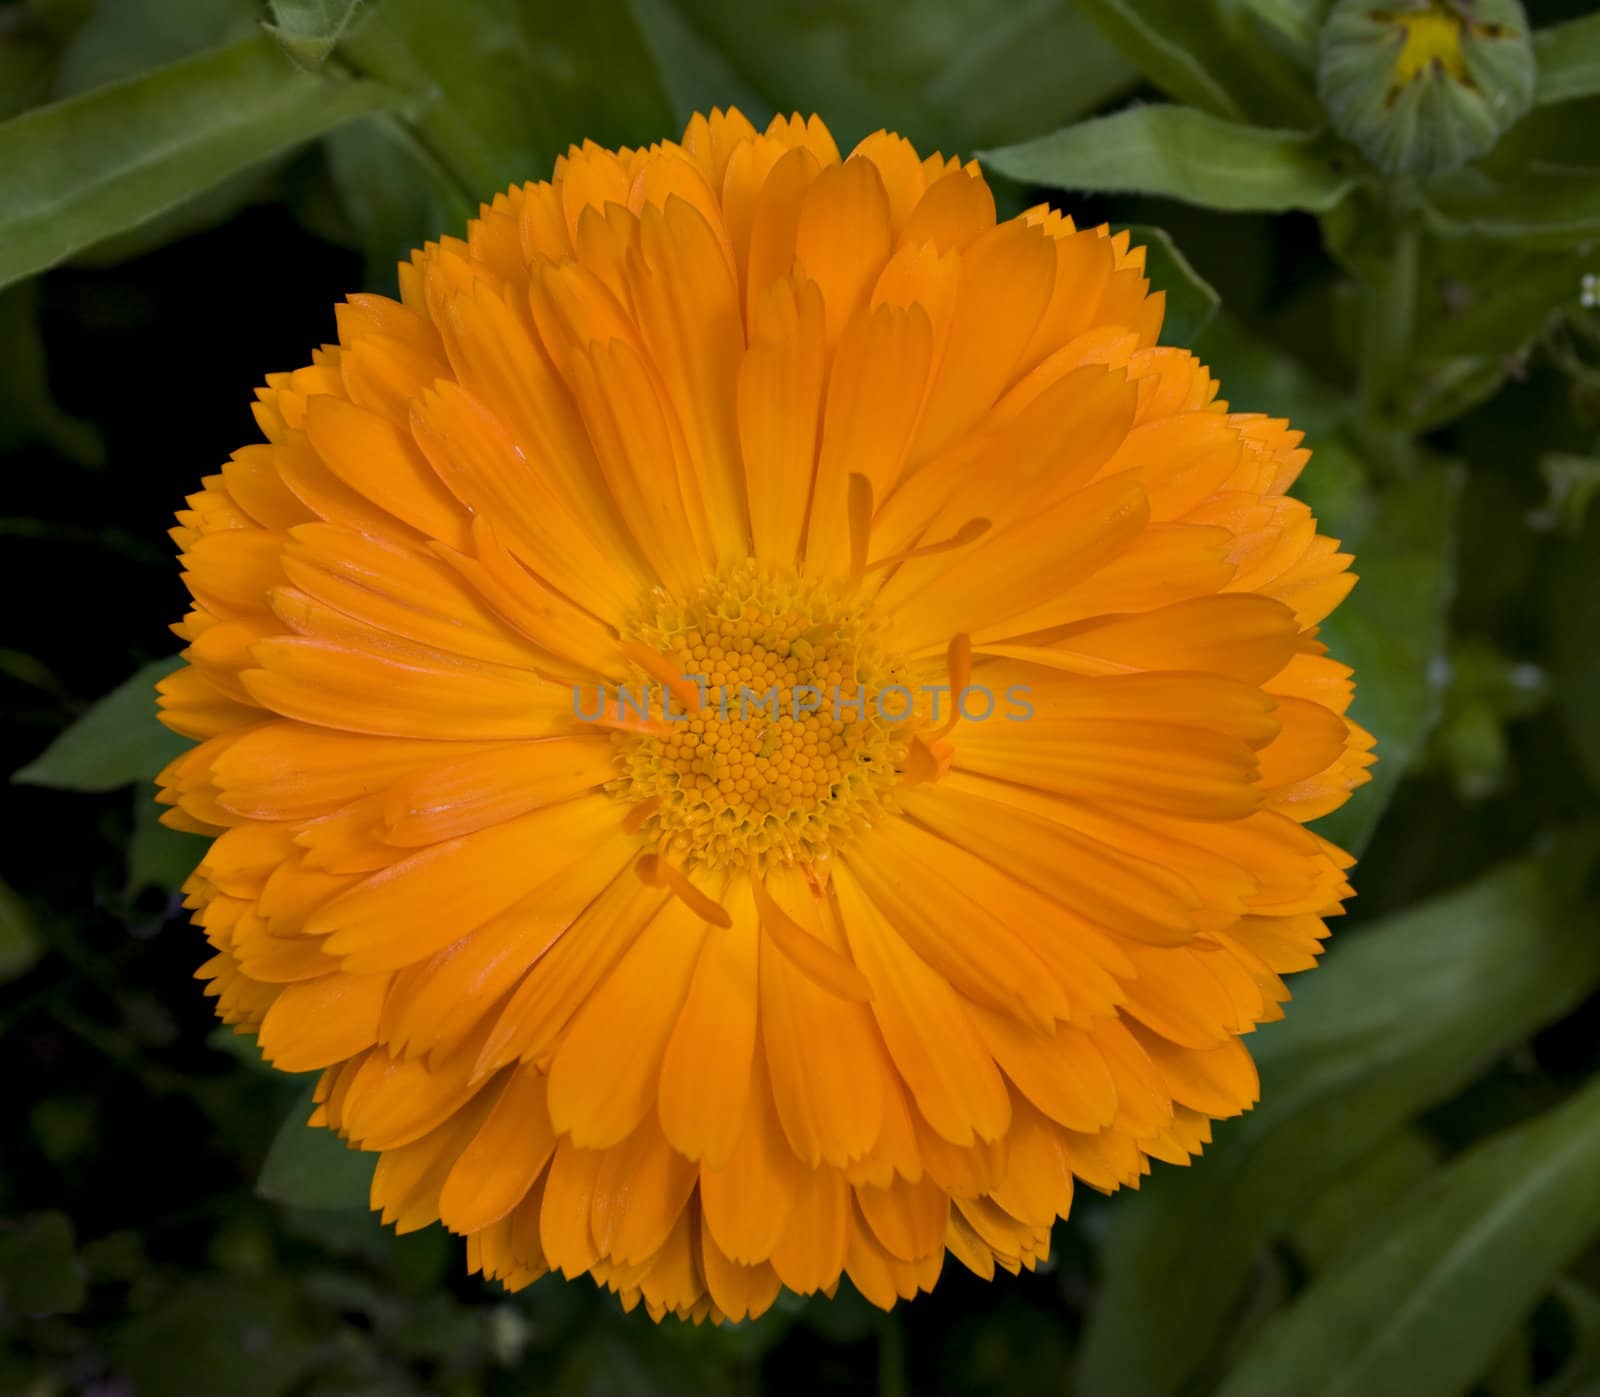 A brilliant orange callendula flower